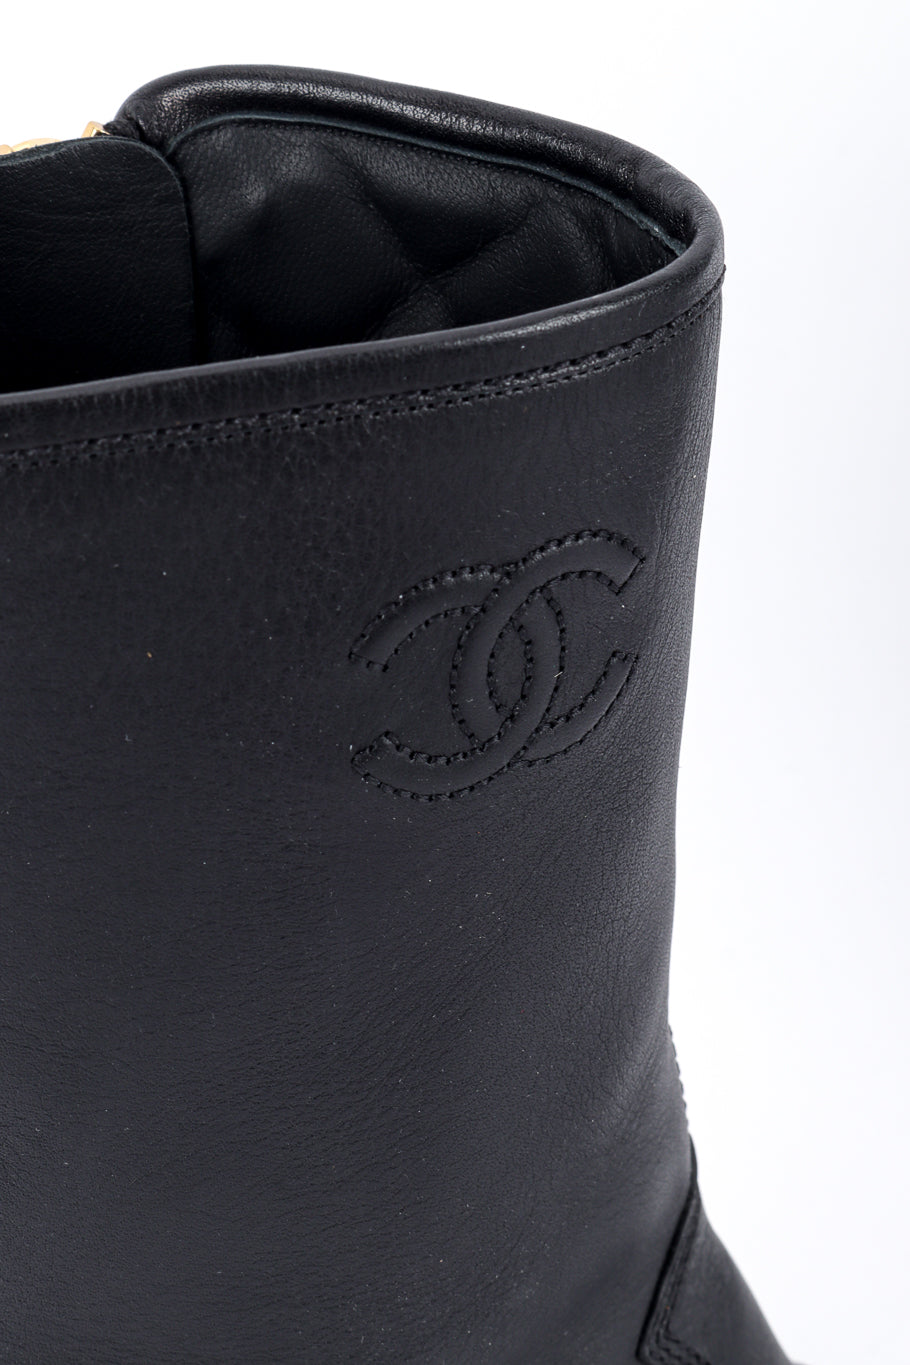 Chanel CC Quilted Mid-Calf Boots stitched CC closeup @recess la